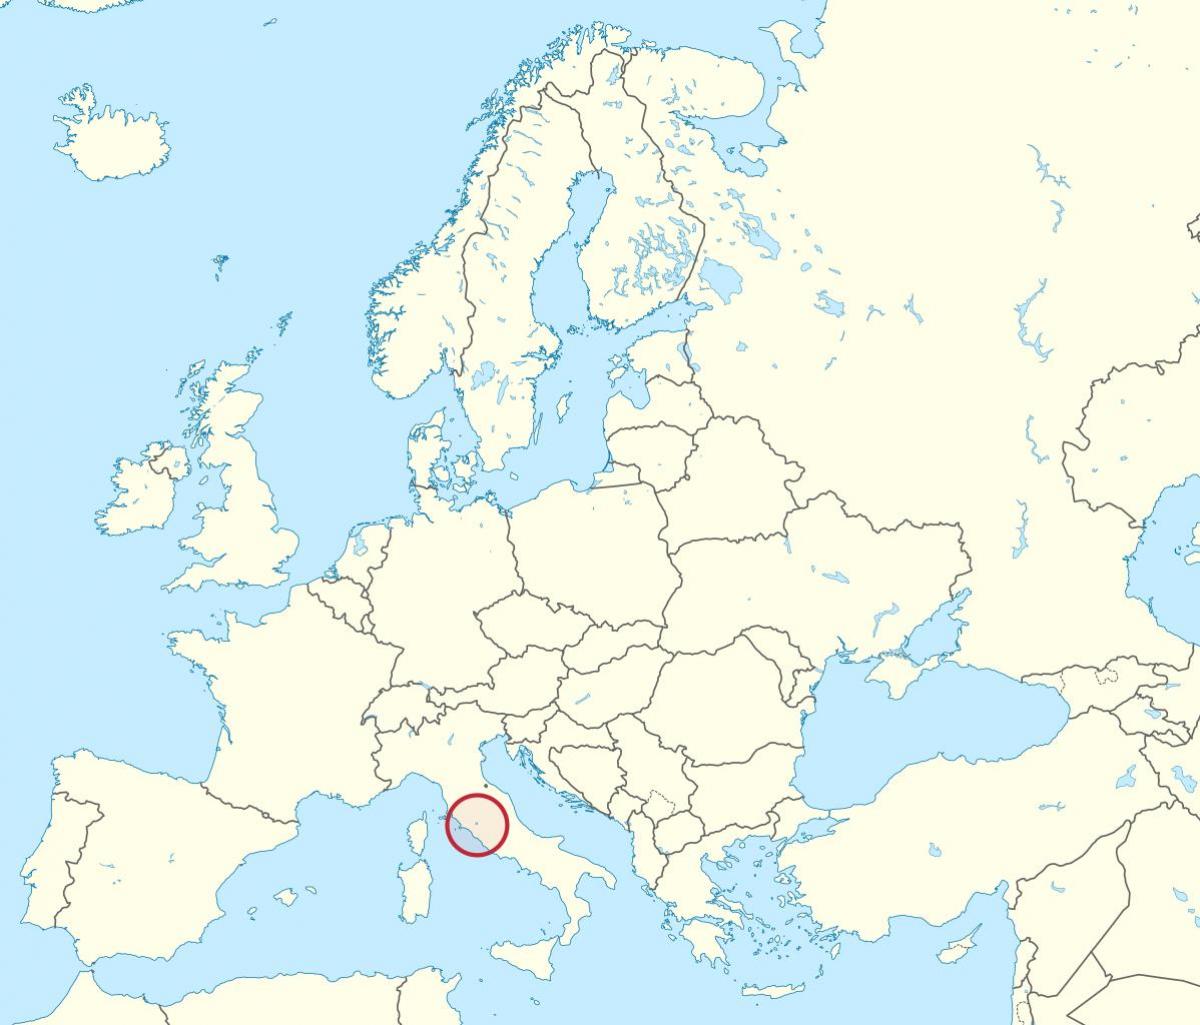 Mapa da cidade do Vaticano europa